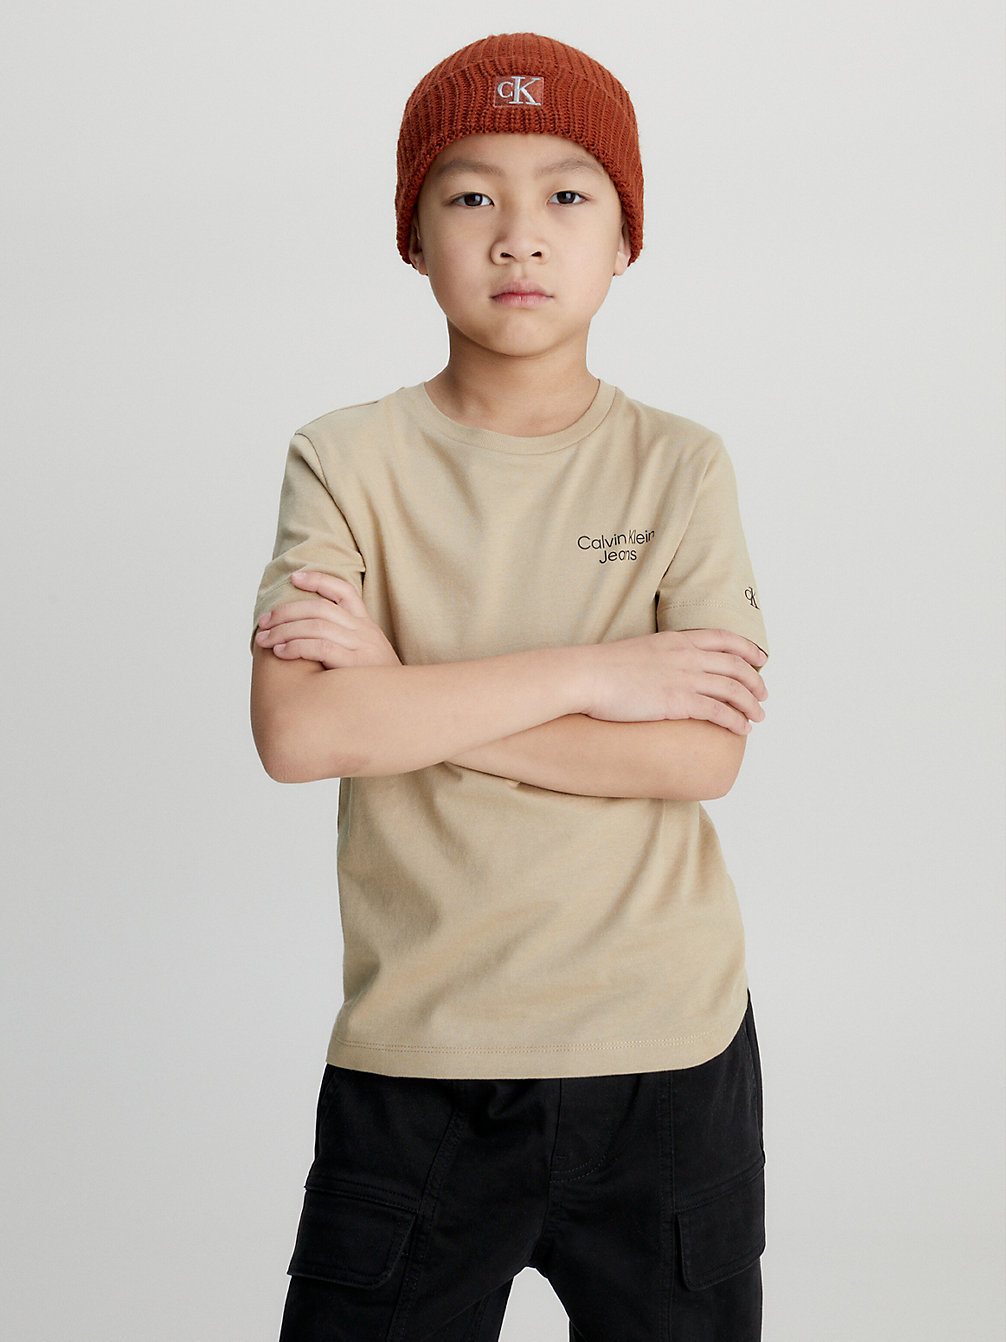 TRAVERTINE Logo-T-Shirt Aus Bio-Baumwolle undefined Jungen Calvin Klein